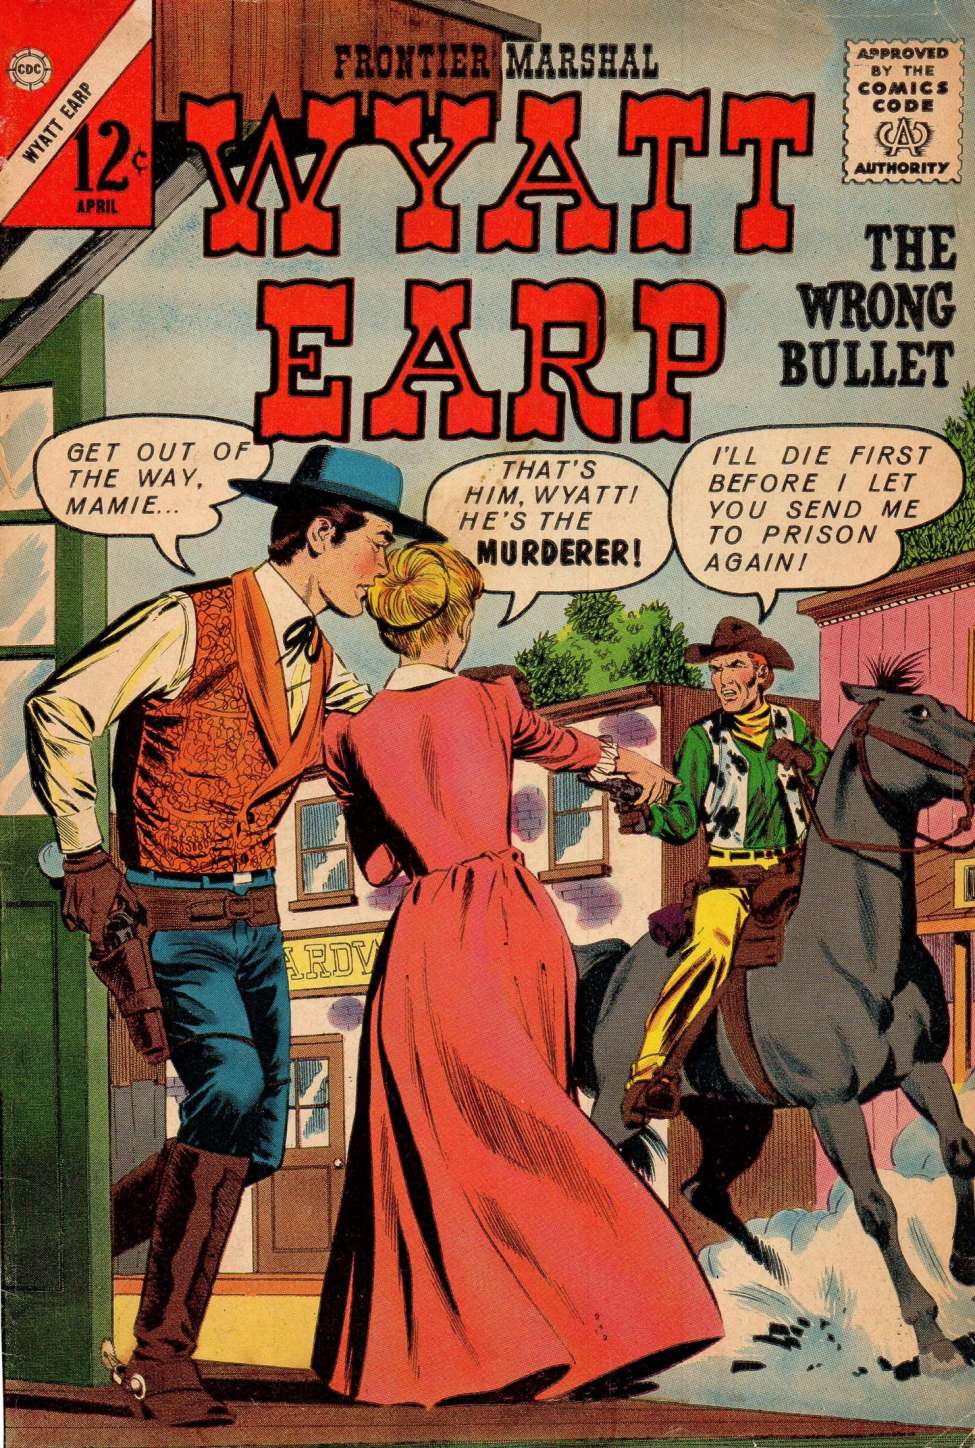 Book Cover For Wyatt Earp Frontier Marshal 47 - Version 2